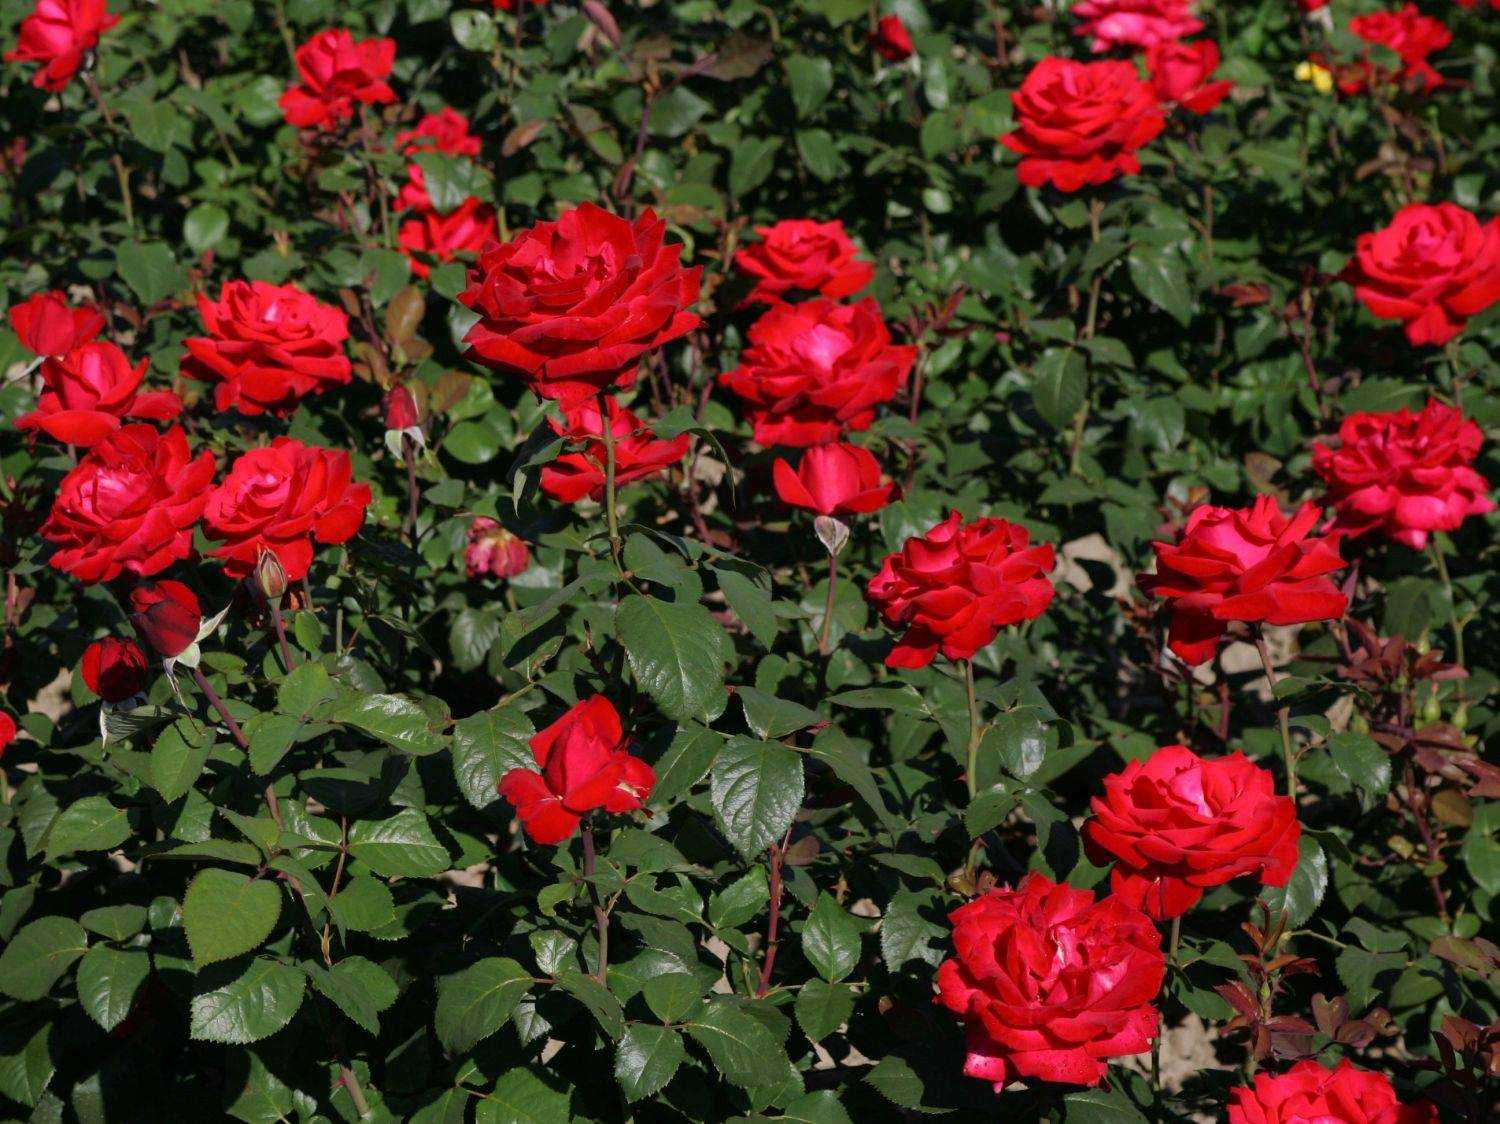 Роза чг супер гранд аморе, grande amore - описание сорта, отзывы, фото | о розе